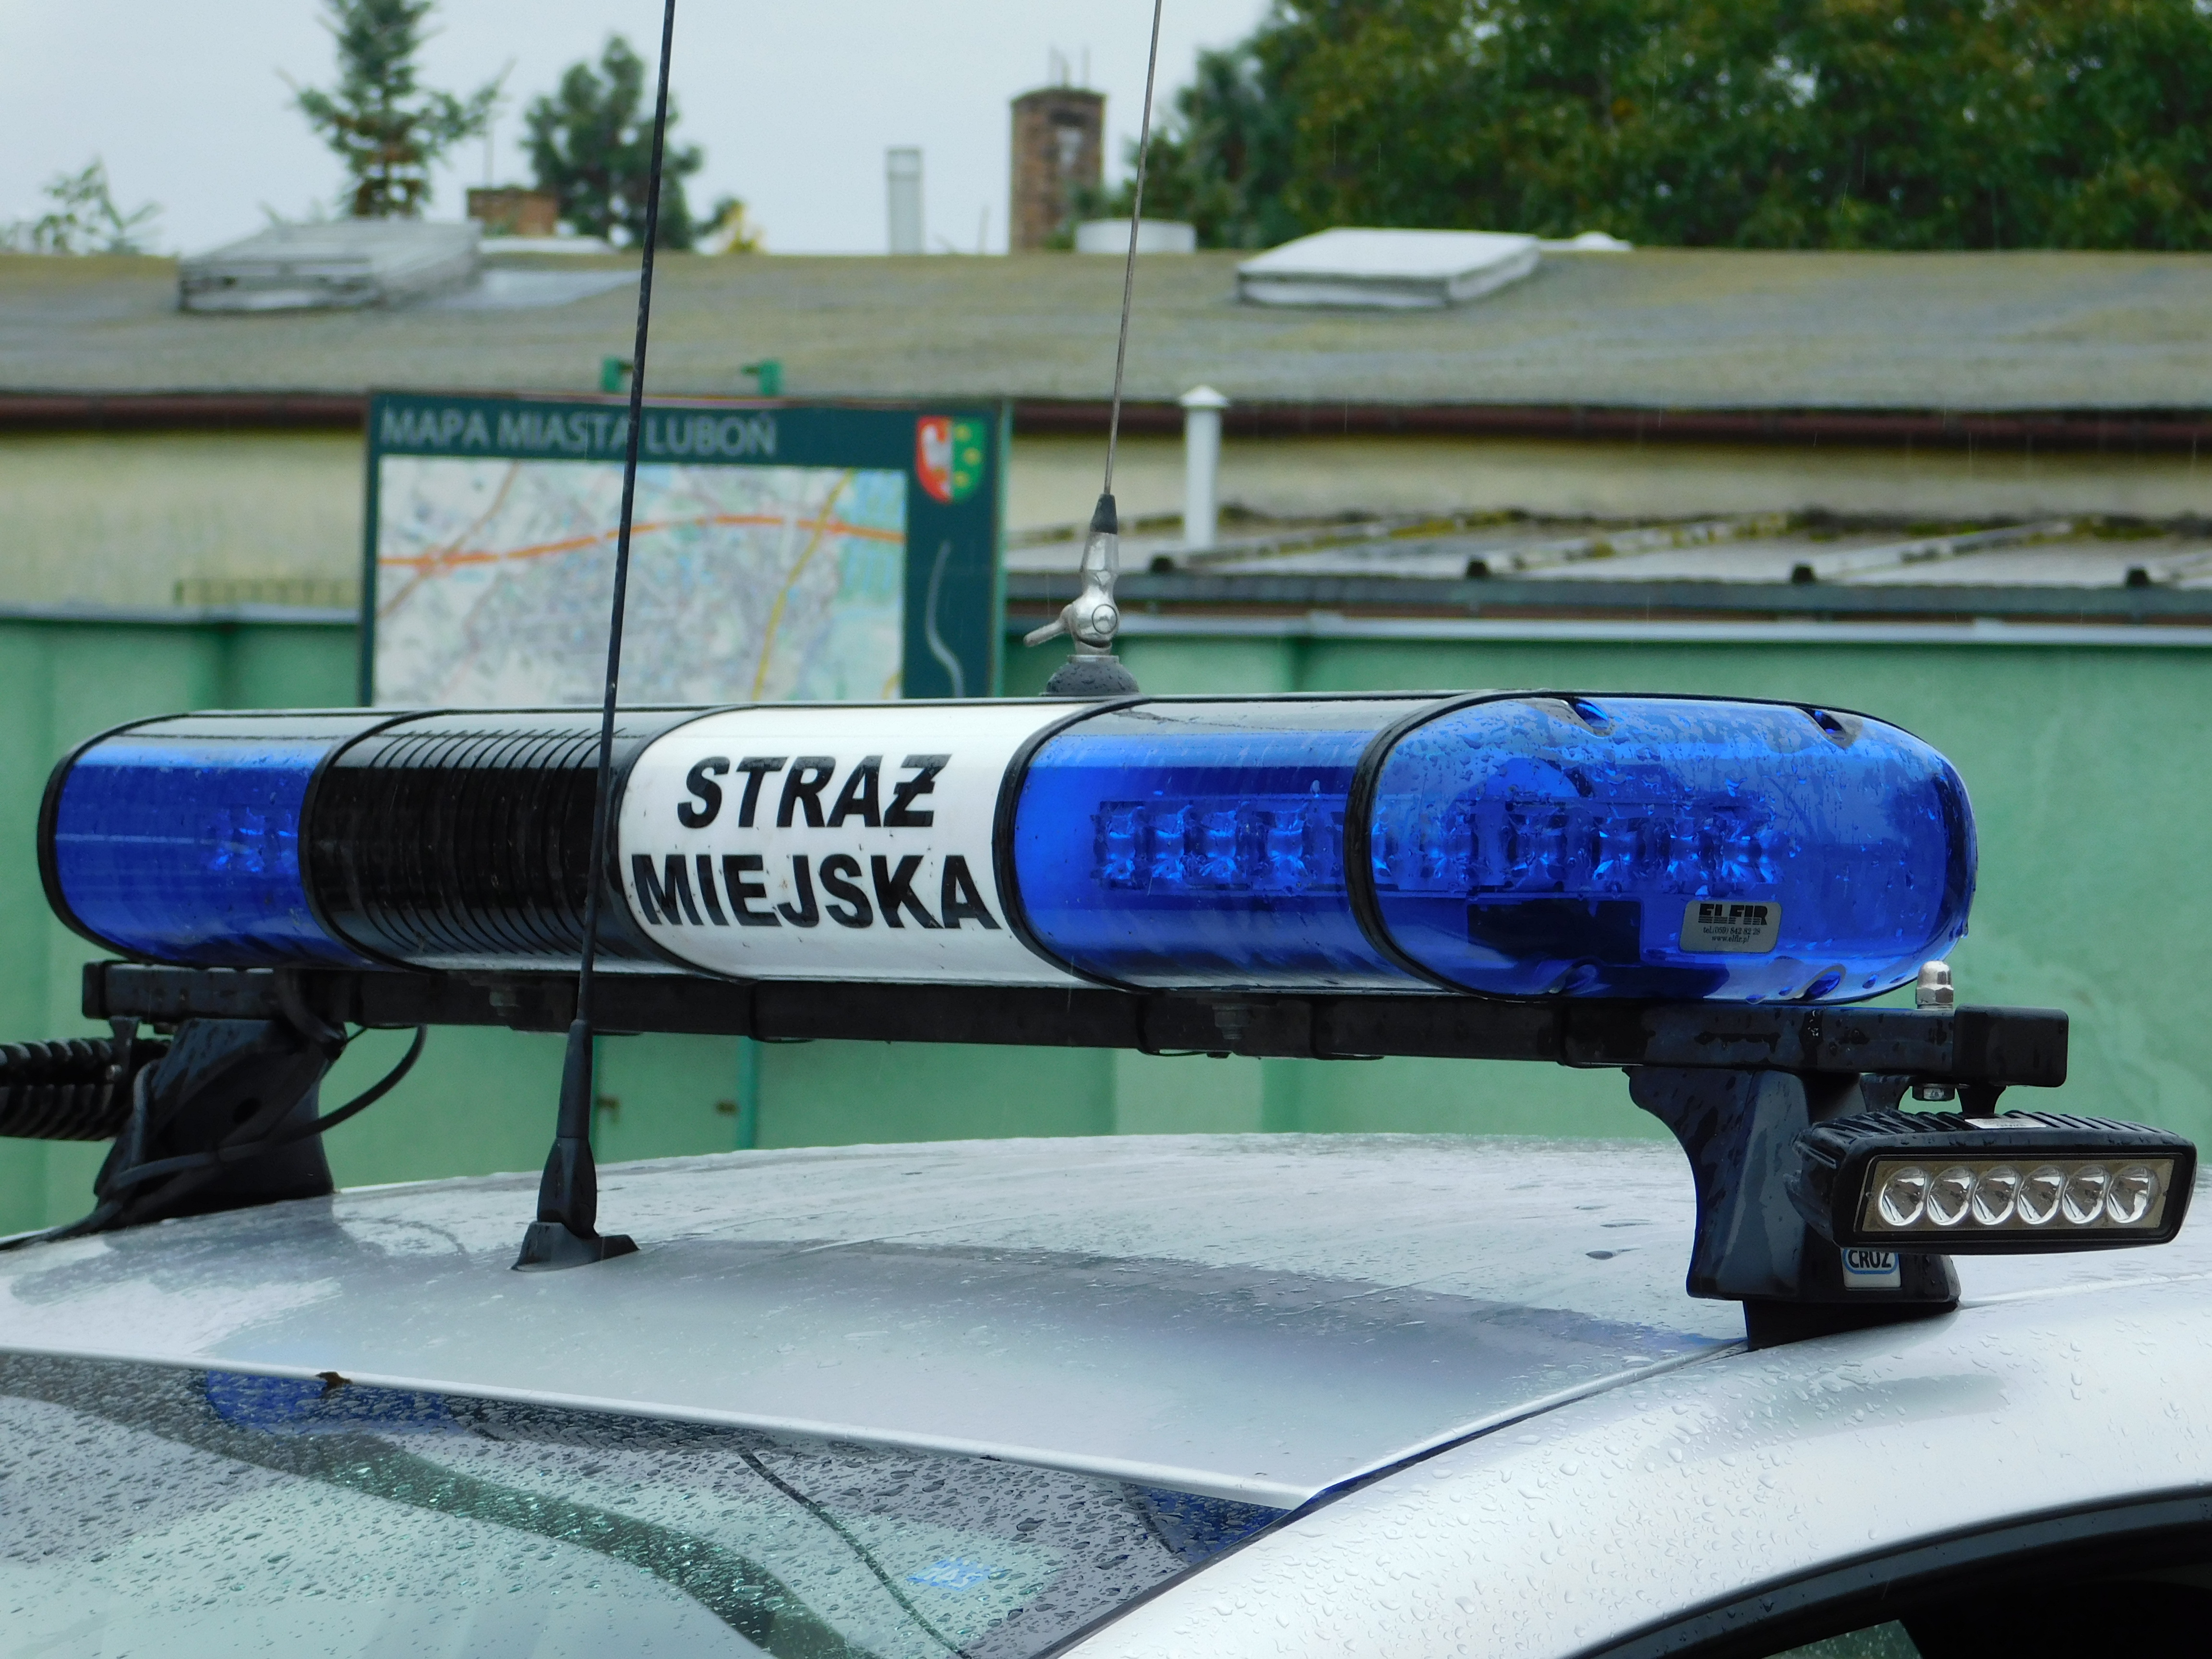 zdjęcie przedstawia sygnalizator świetlny i dźwiękowy na samochodzie Straży Miejskiej